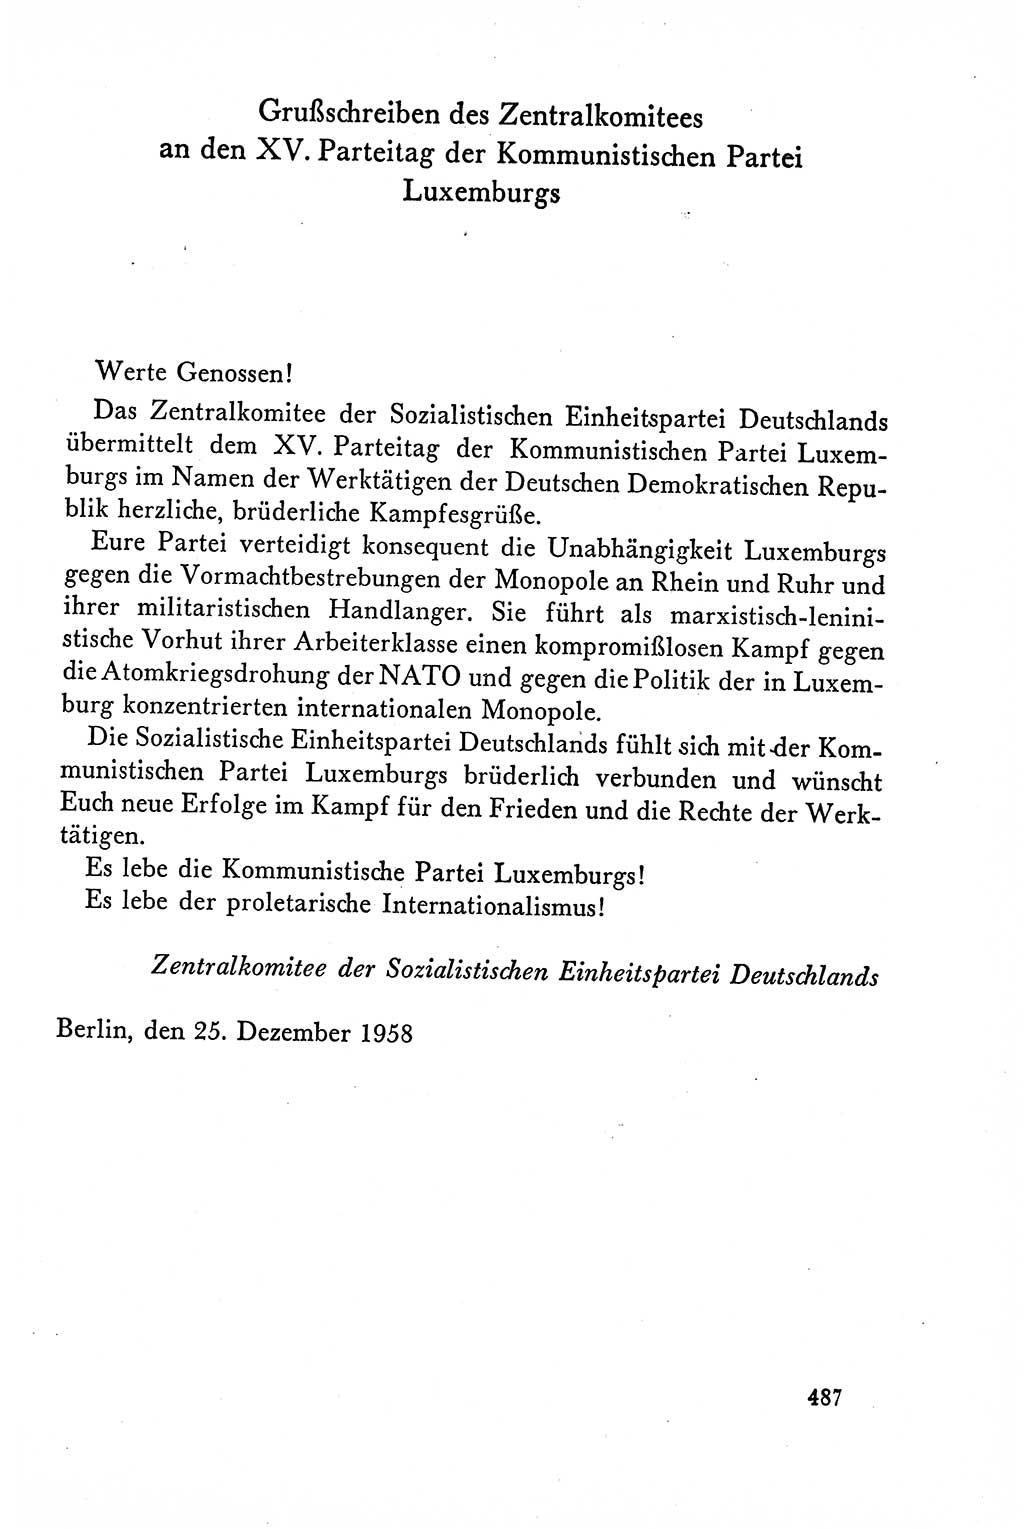 Dokumente der Sozialistischen Einheitspartei Deutschlands (SED) [Deutsche Demokratische Republik (DDR)] 1958-1959, Seite 487 (Dok. SED DDR 1958-1959, S. 487)